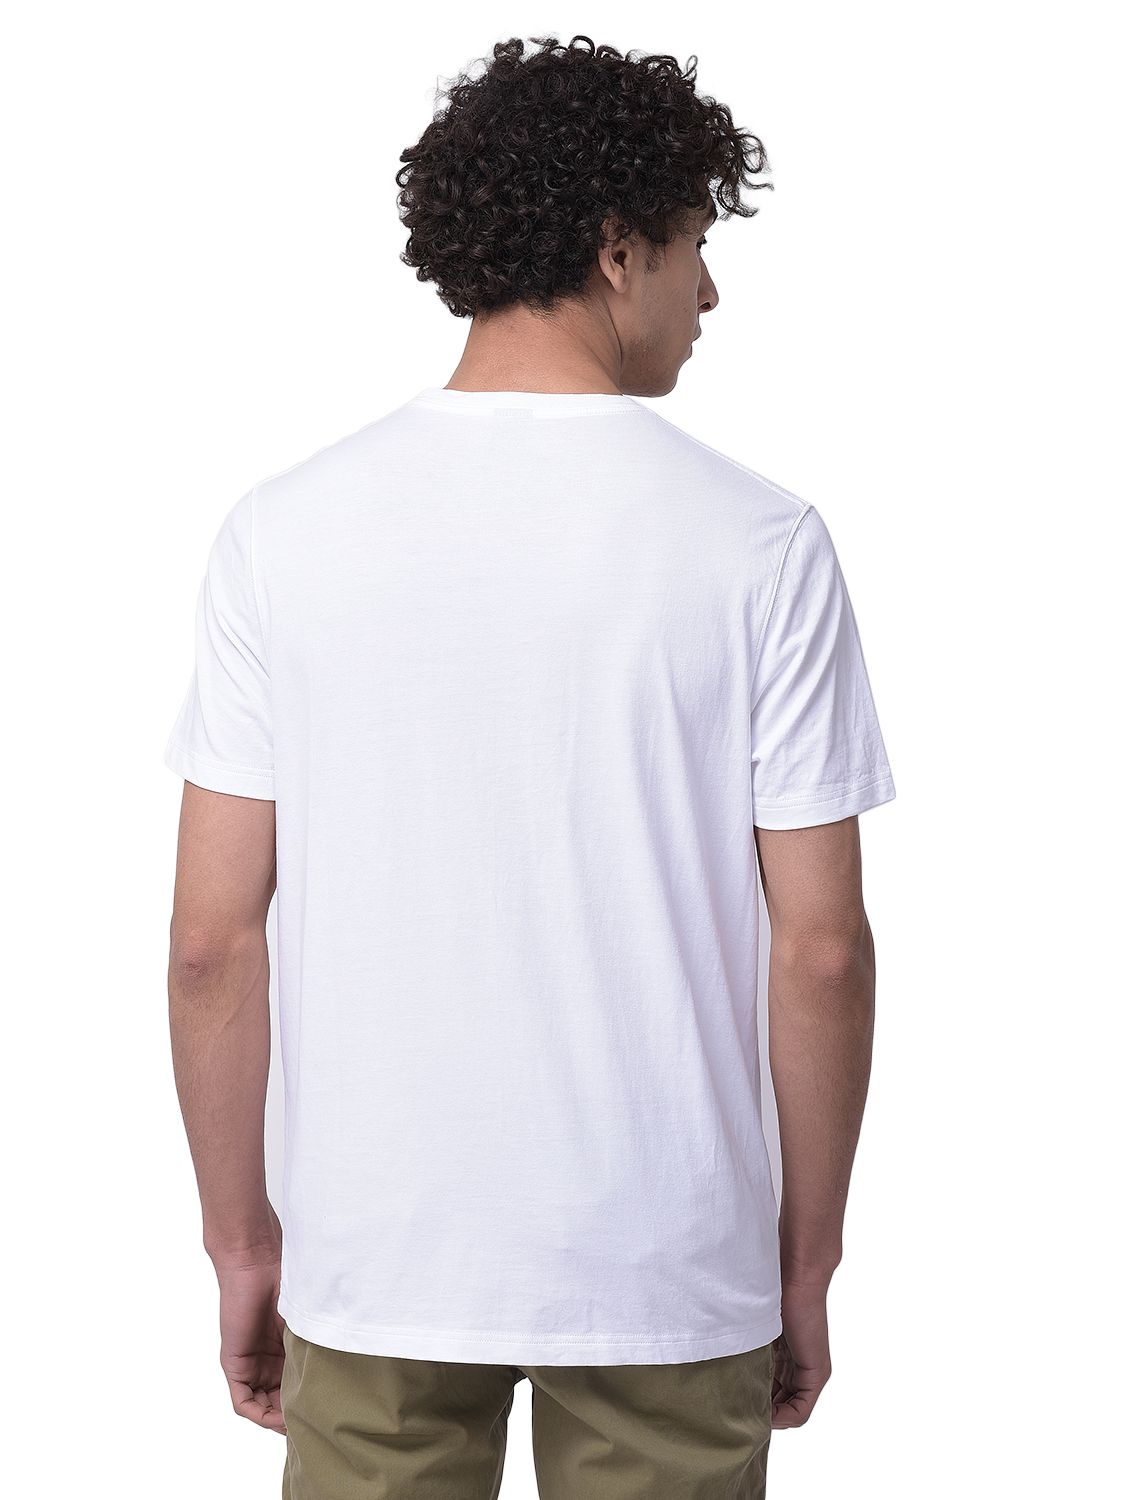 White crew neck t-shirt for men